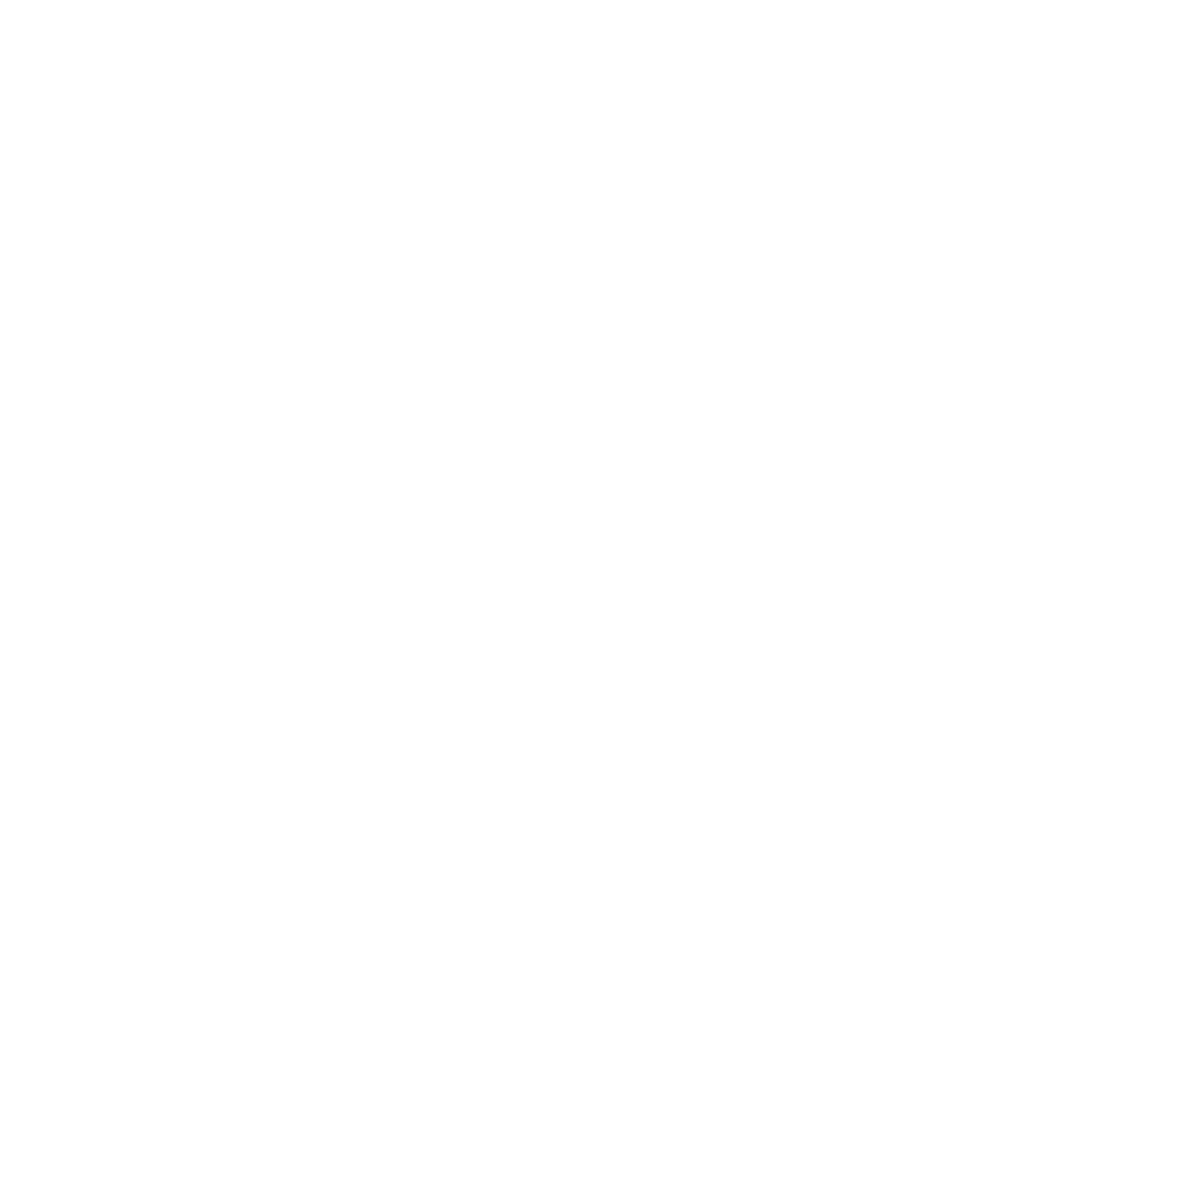 Assra Digital